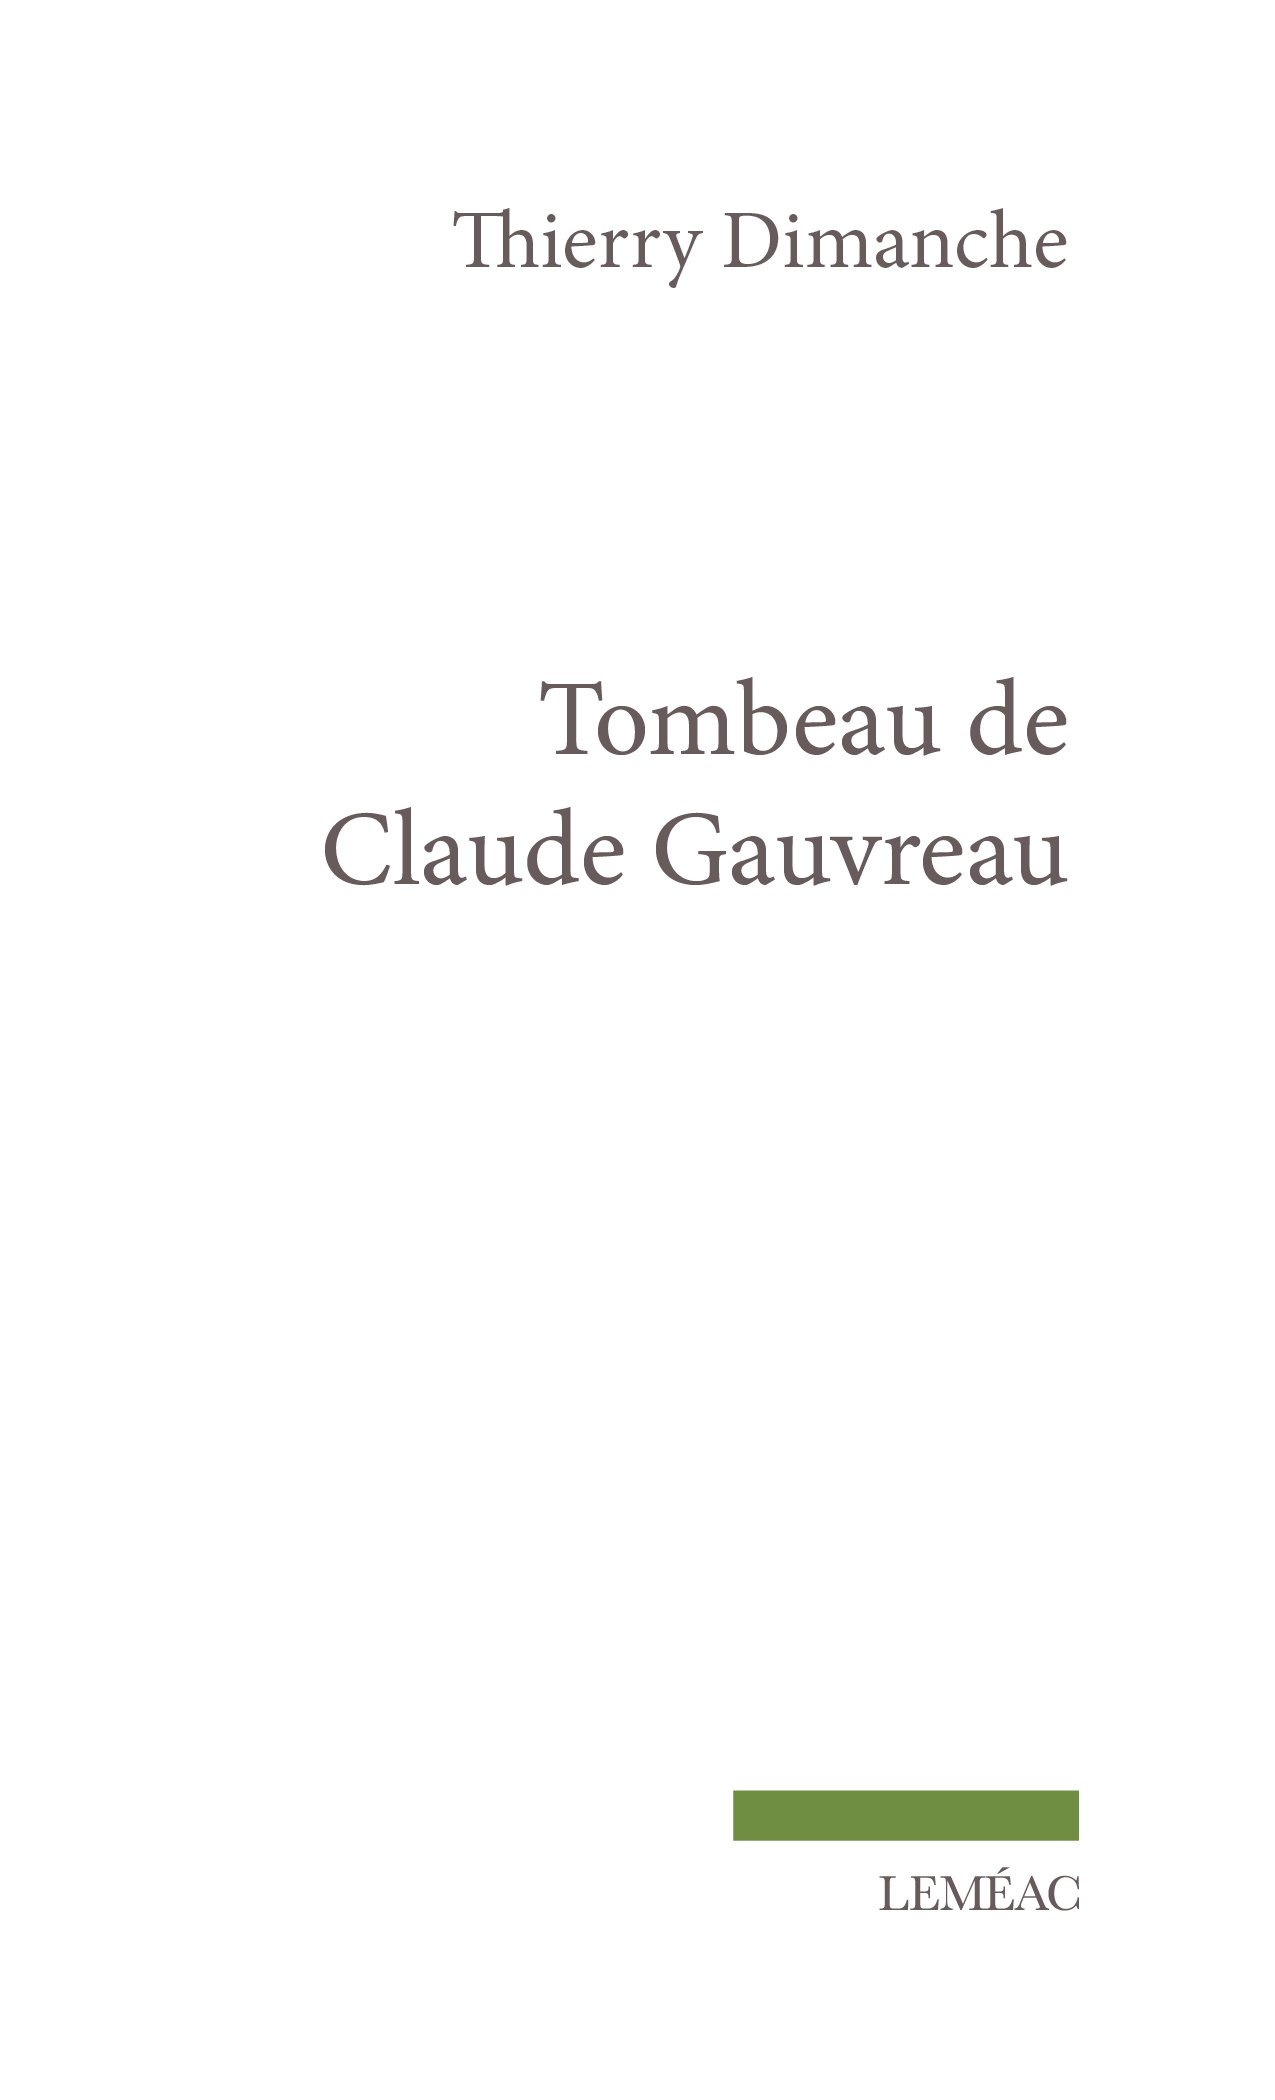 Tombeau de Claude Gauvreau_C1.jpg